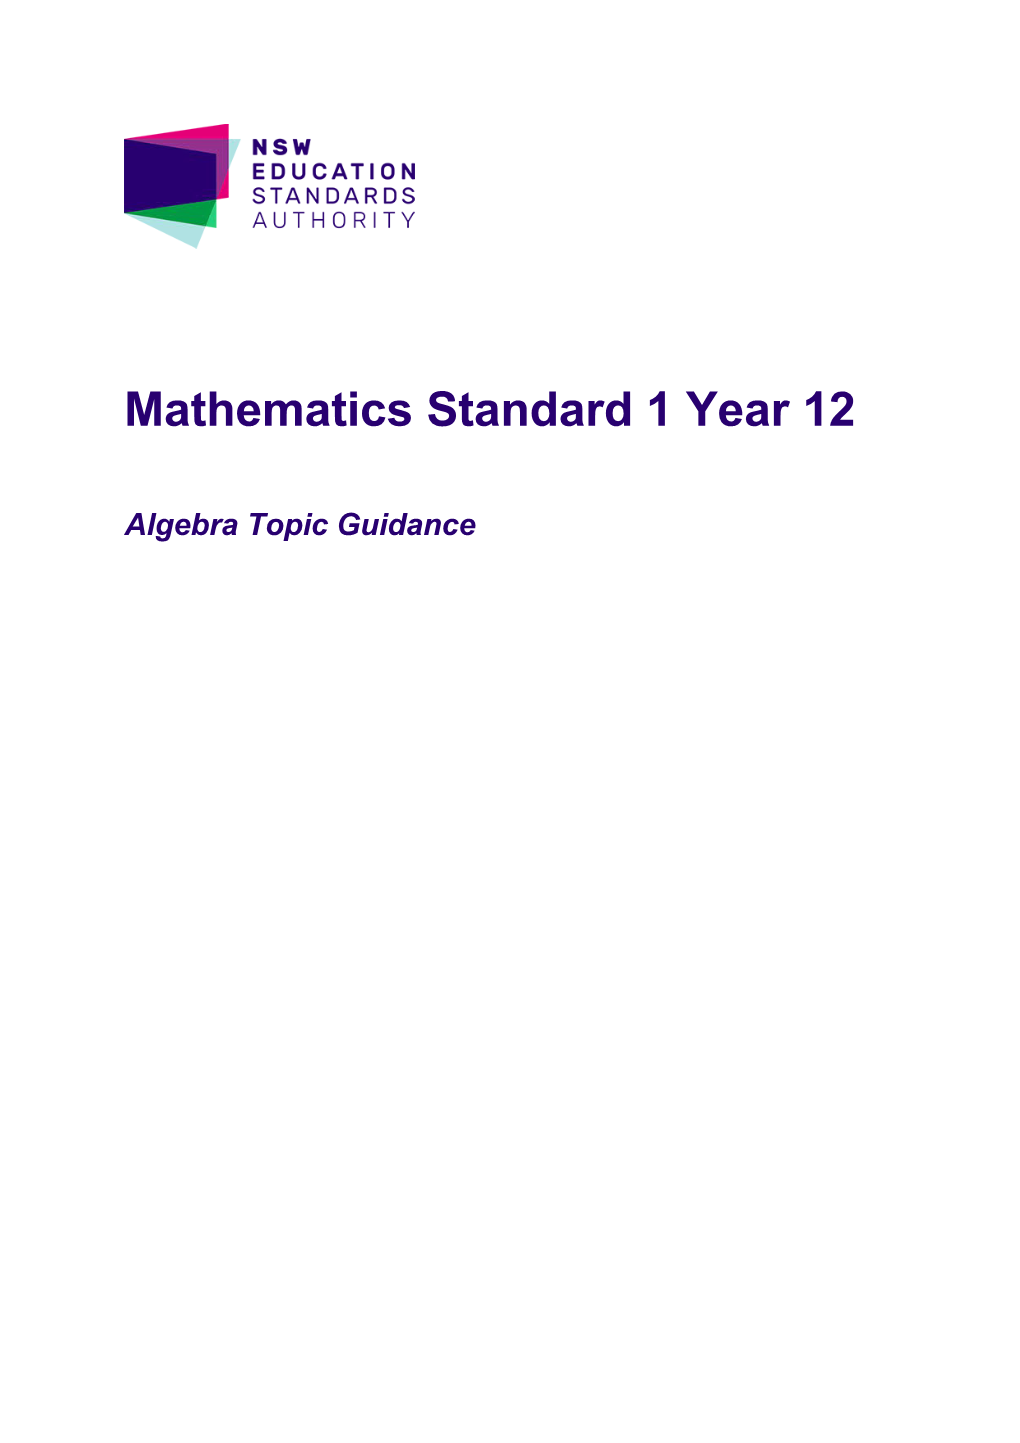 Year 12 Mathematics Standard 1 Topic Guidance: Algebra